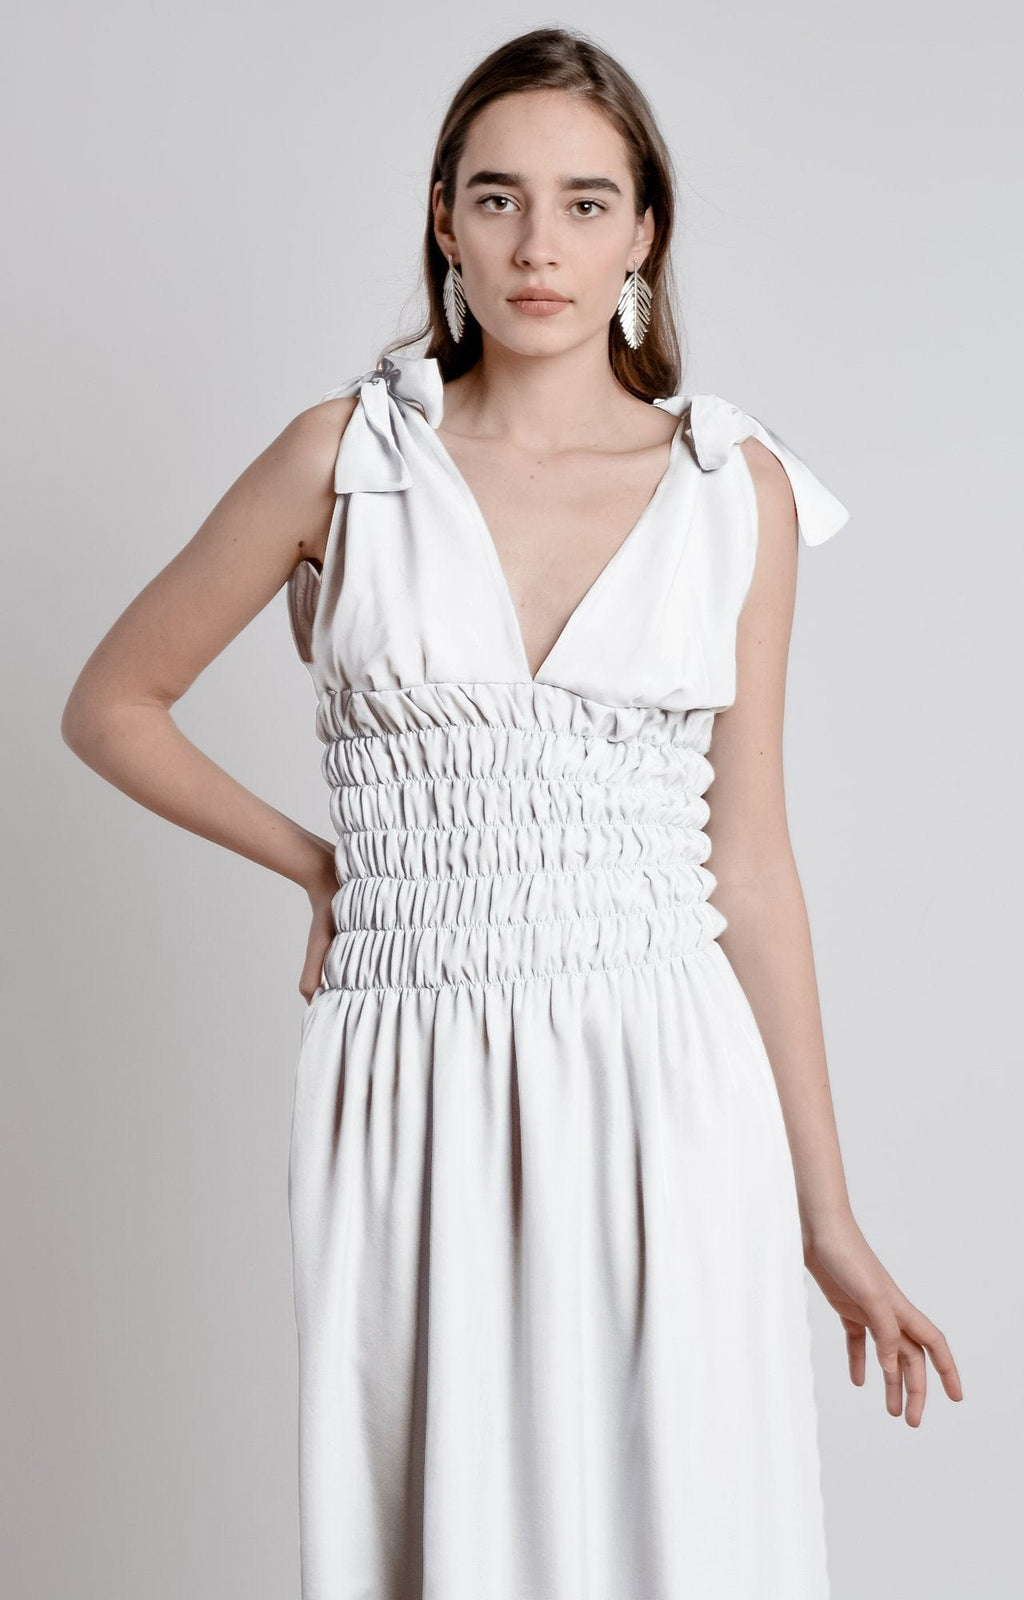 Bastet Noir Women's Dress CUSTOM / White Dress Maxi Dress in Silk/Cotton Blend in Light Blue, White, or Black